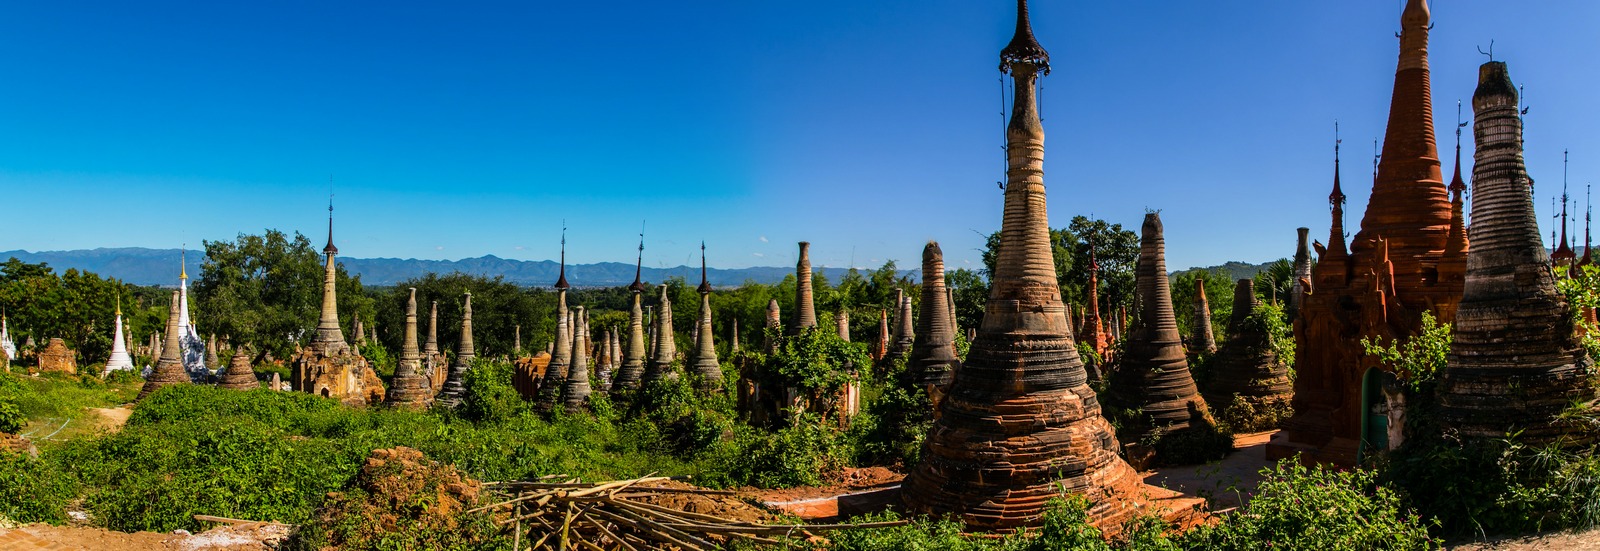 Myanmar Inle Lake Shwe Inn Dein Pagoda 07